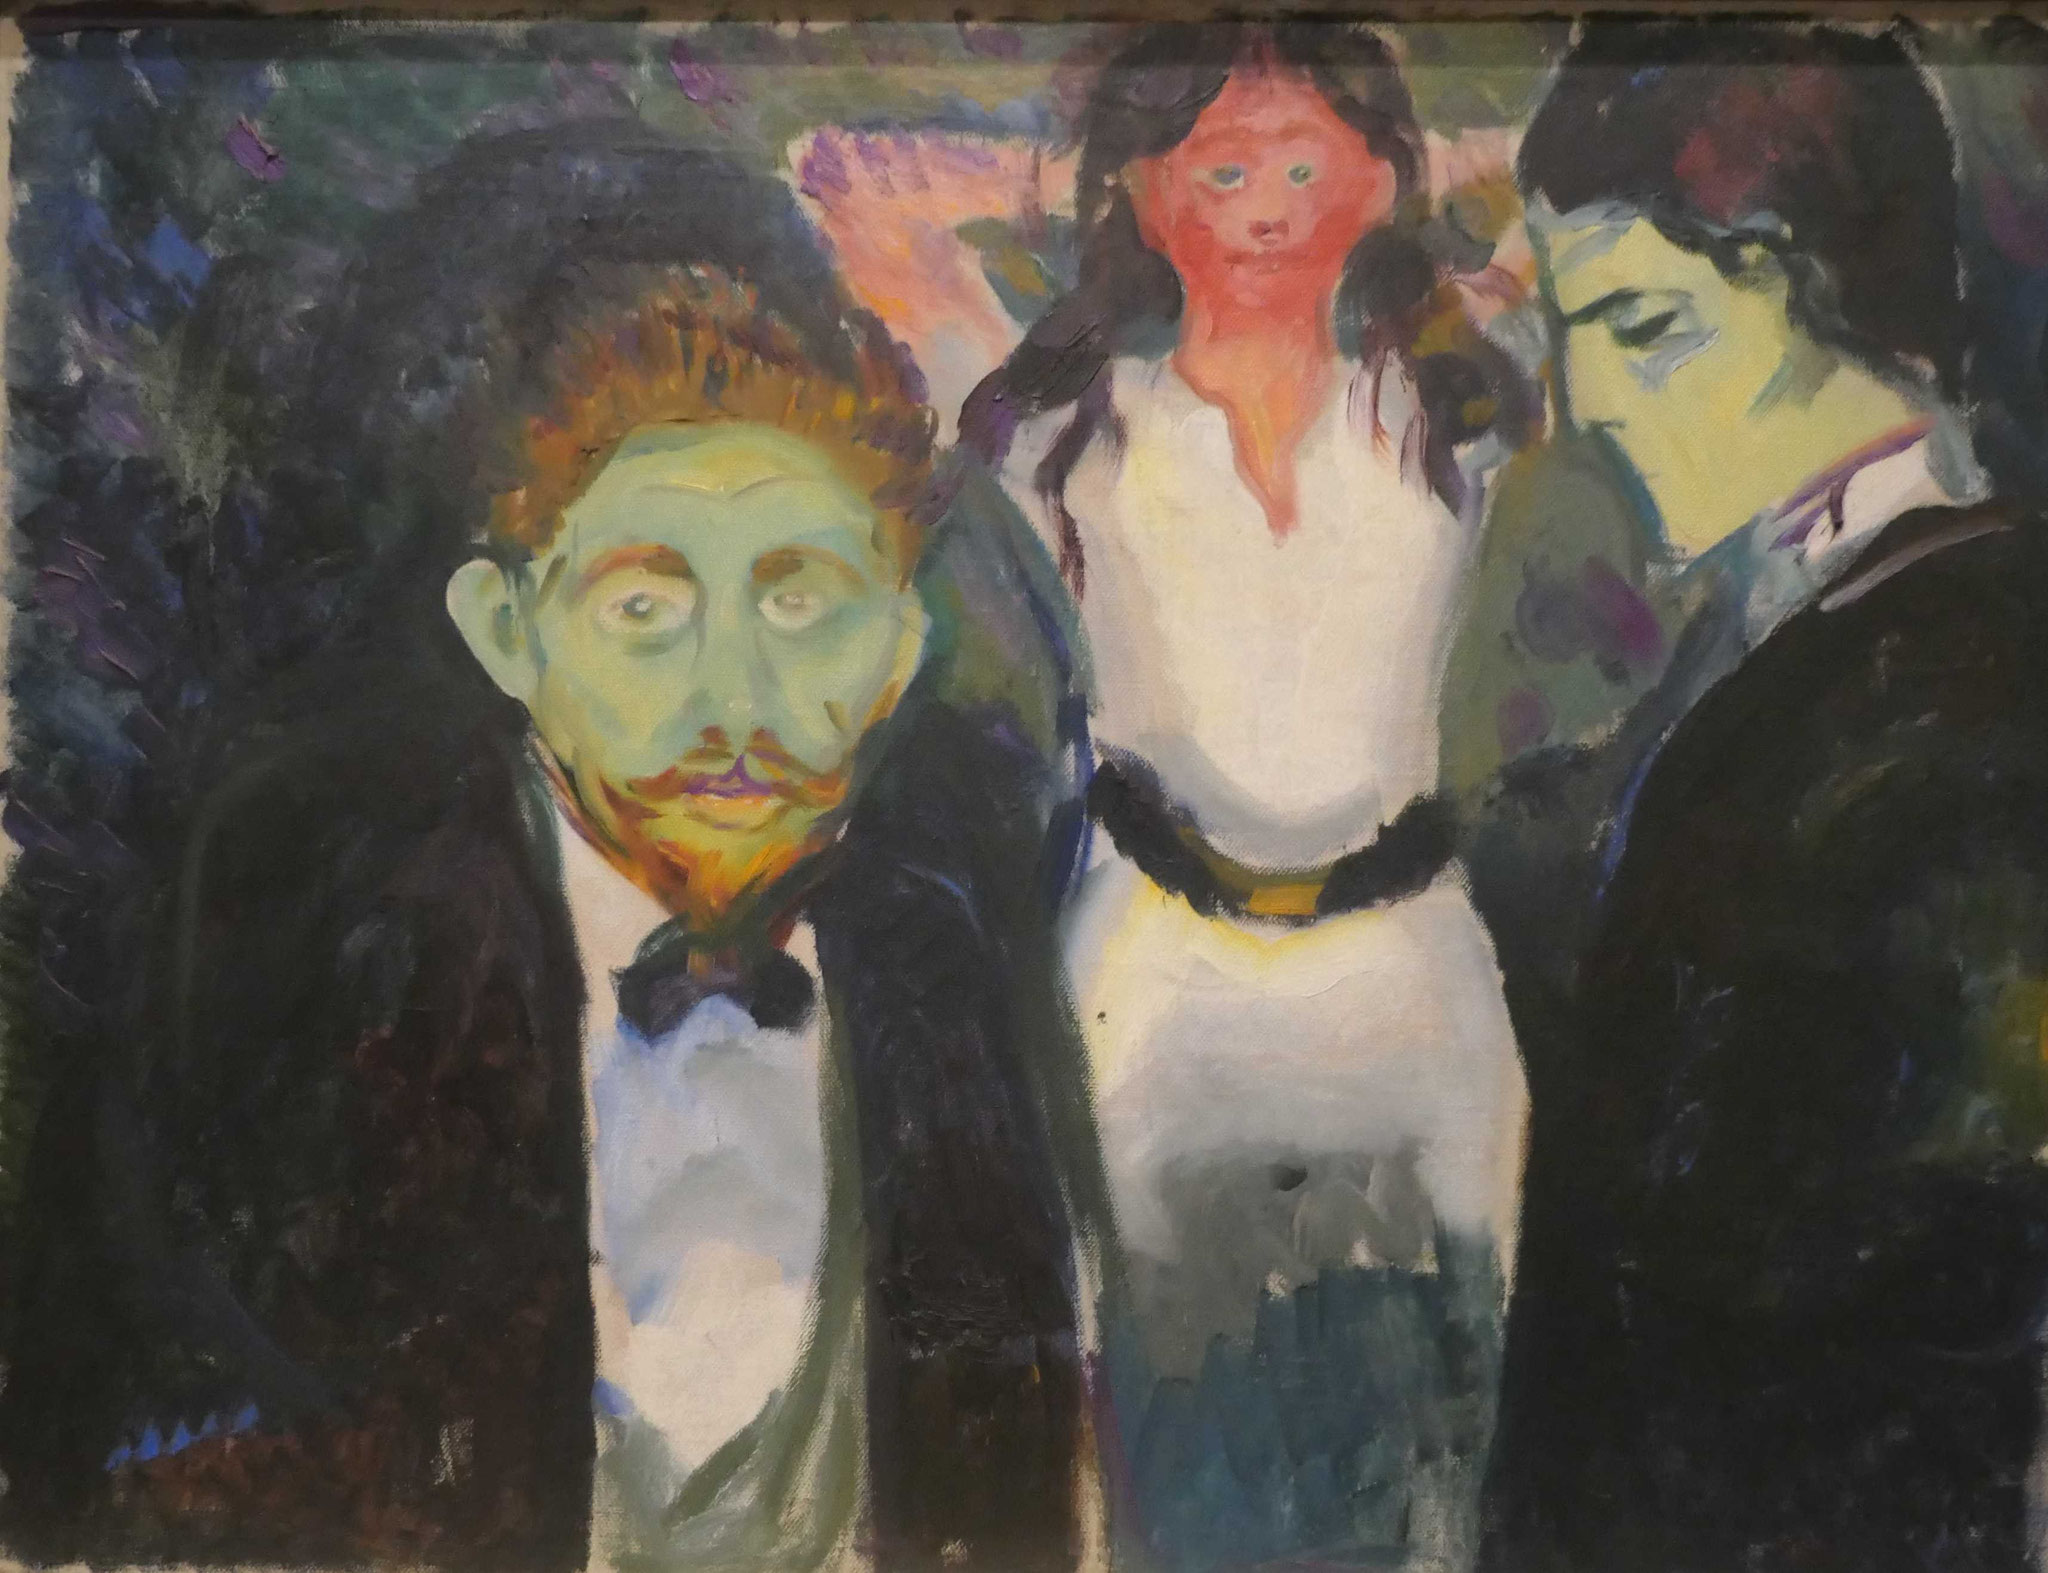 Edvard Munch, Eifersucht, 1907, Munch Museum, Oslo